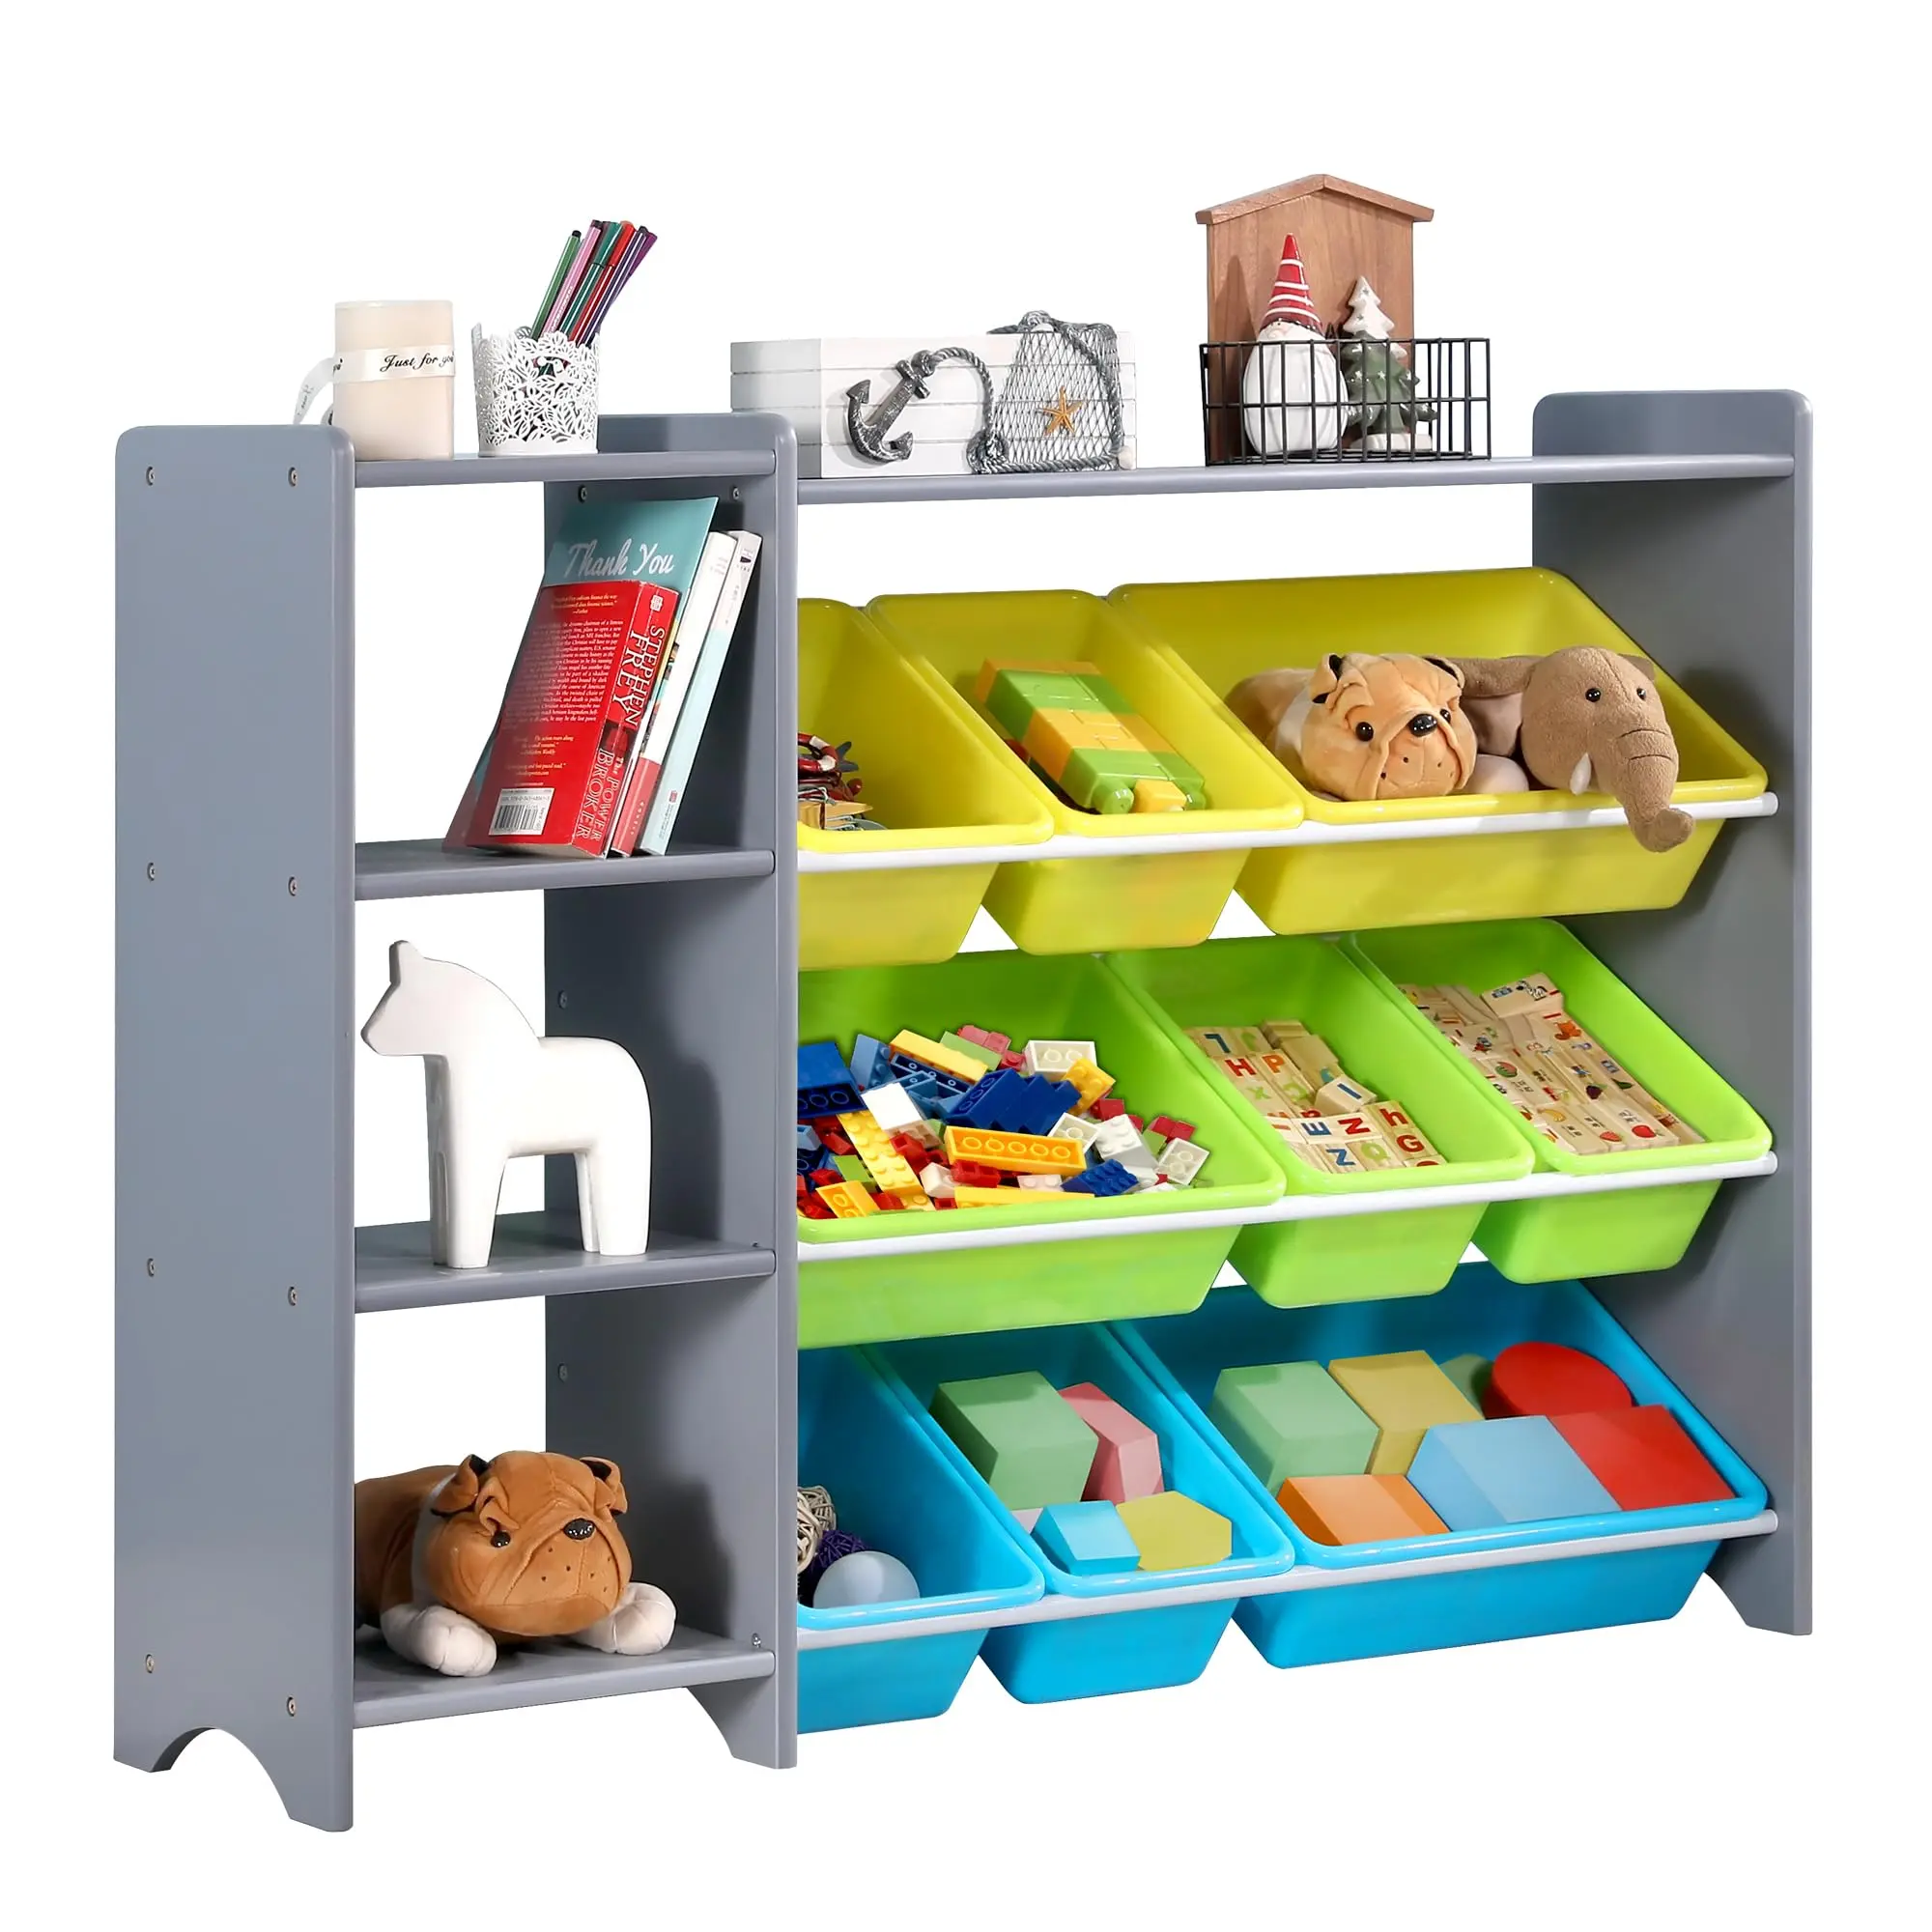 estante de plastico para juguetes - Cómo se llama el plástico de los juguetes